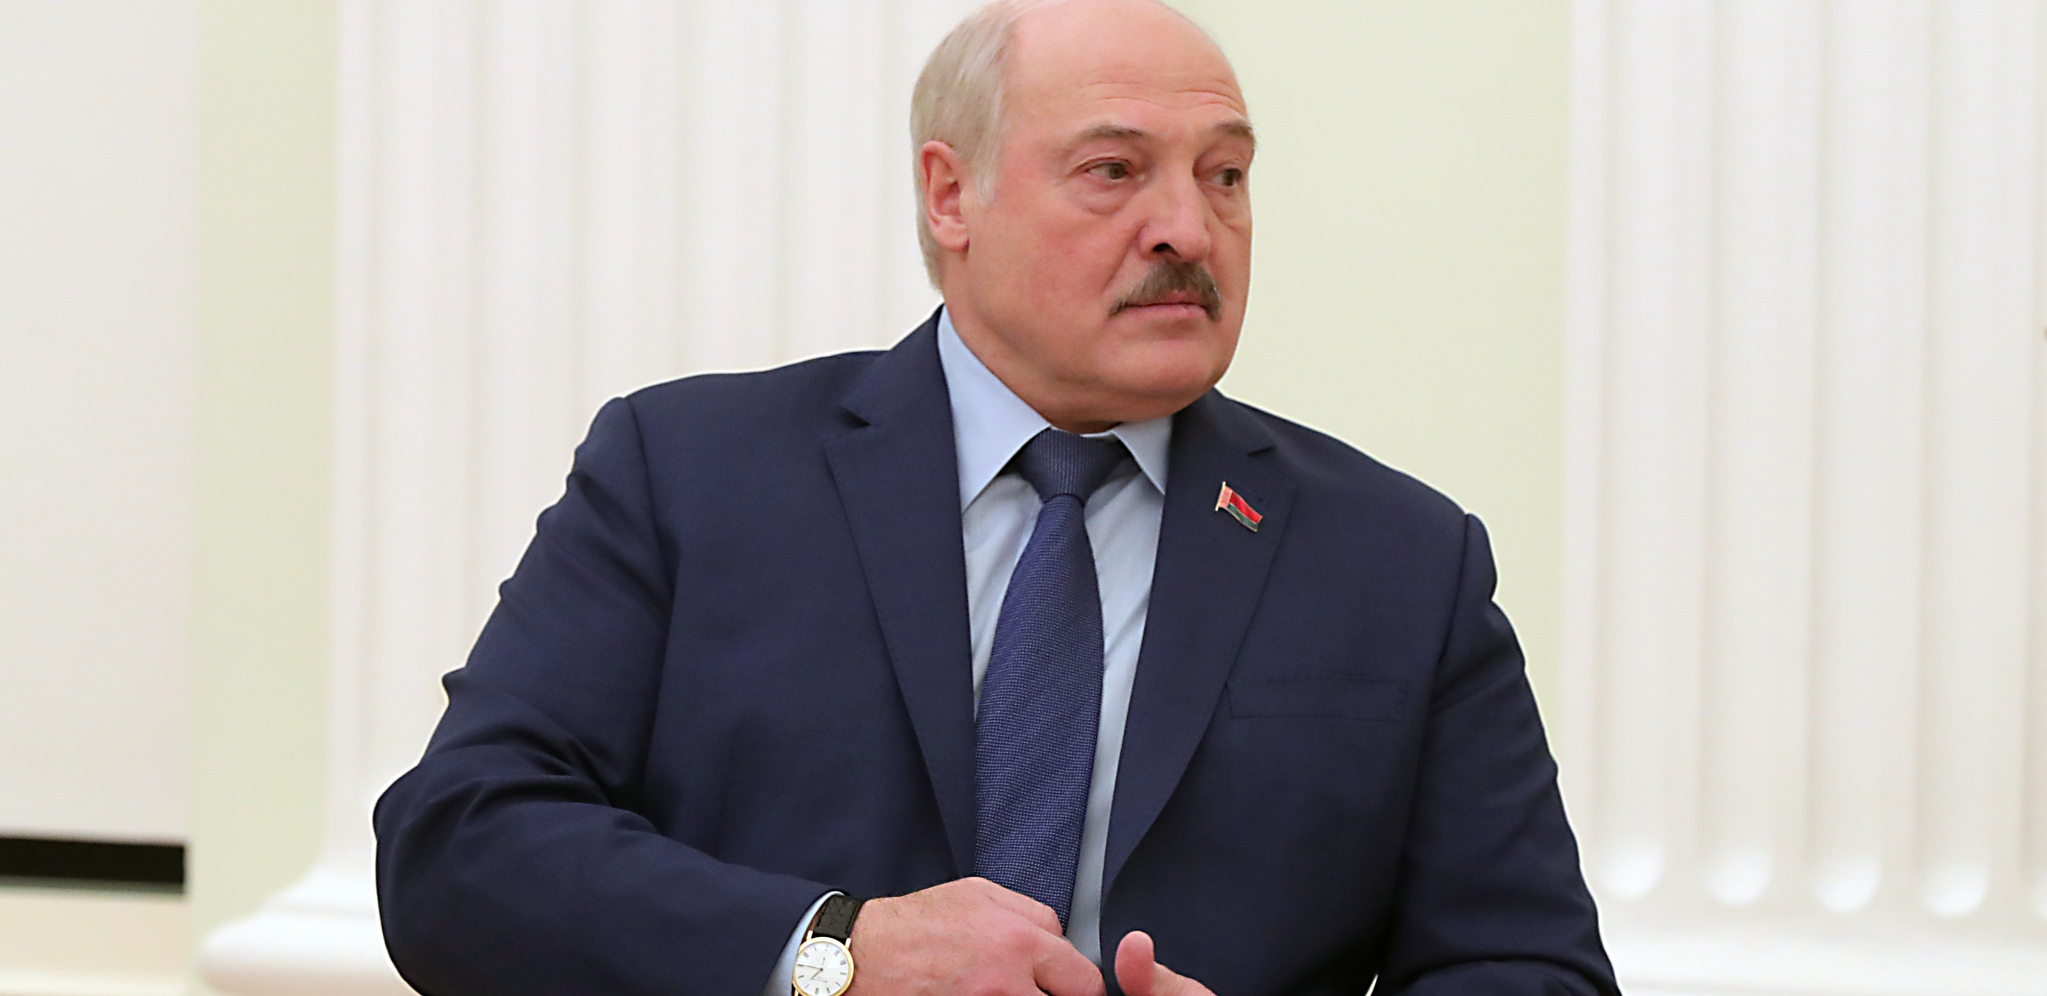 ZAHTEV EVROPSKOG PARLAMENTA Traže od MKS da raspiše poternicu za Lukašenkom